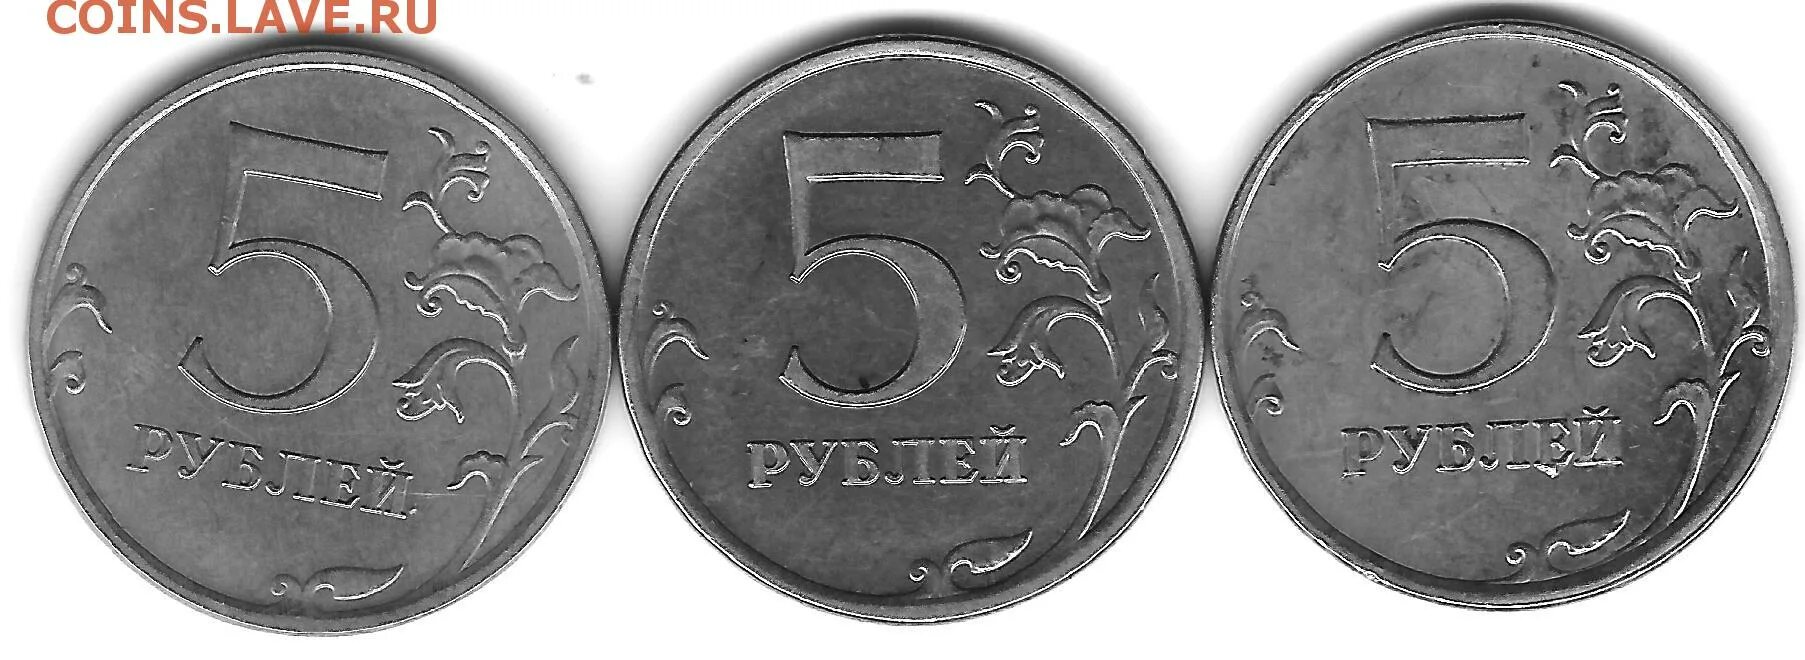 5 рублей 13 года. 5р 1997г СПМД. 5р 1997. Монета 5 рублей 2009 без борта. 13 Рублей 1998 года.